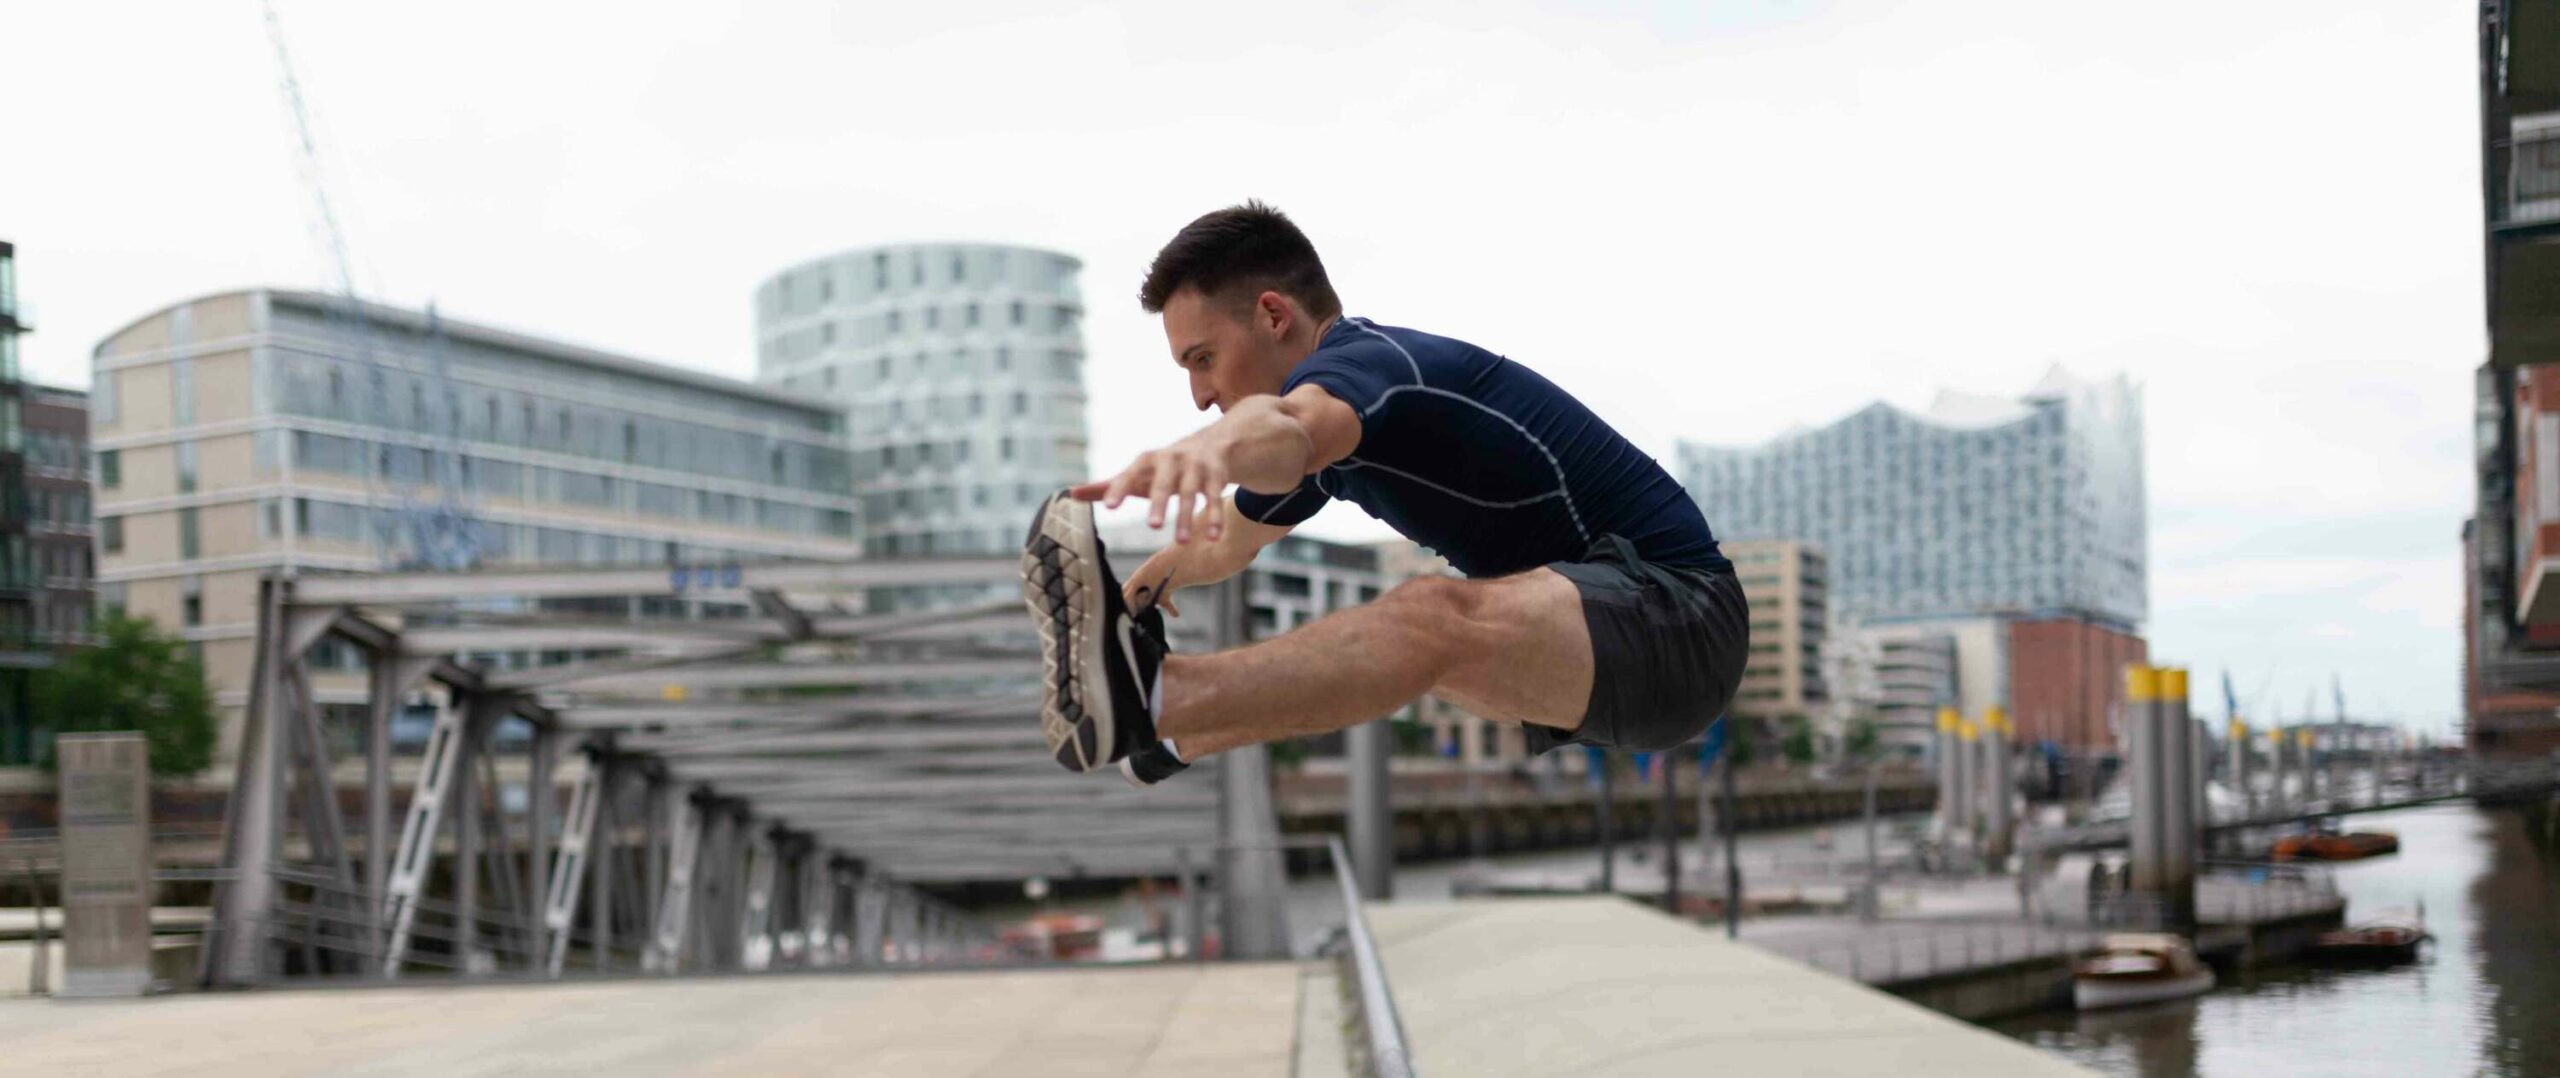 Ein Sportler springt im freien Grätschsprung über ein Geländer. Im Hintergrund ist die Hafencity Hamburgs zu sehen.